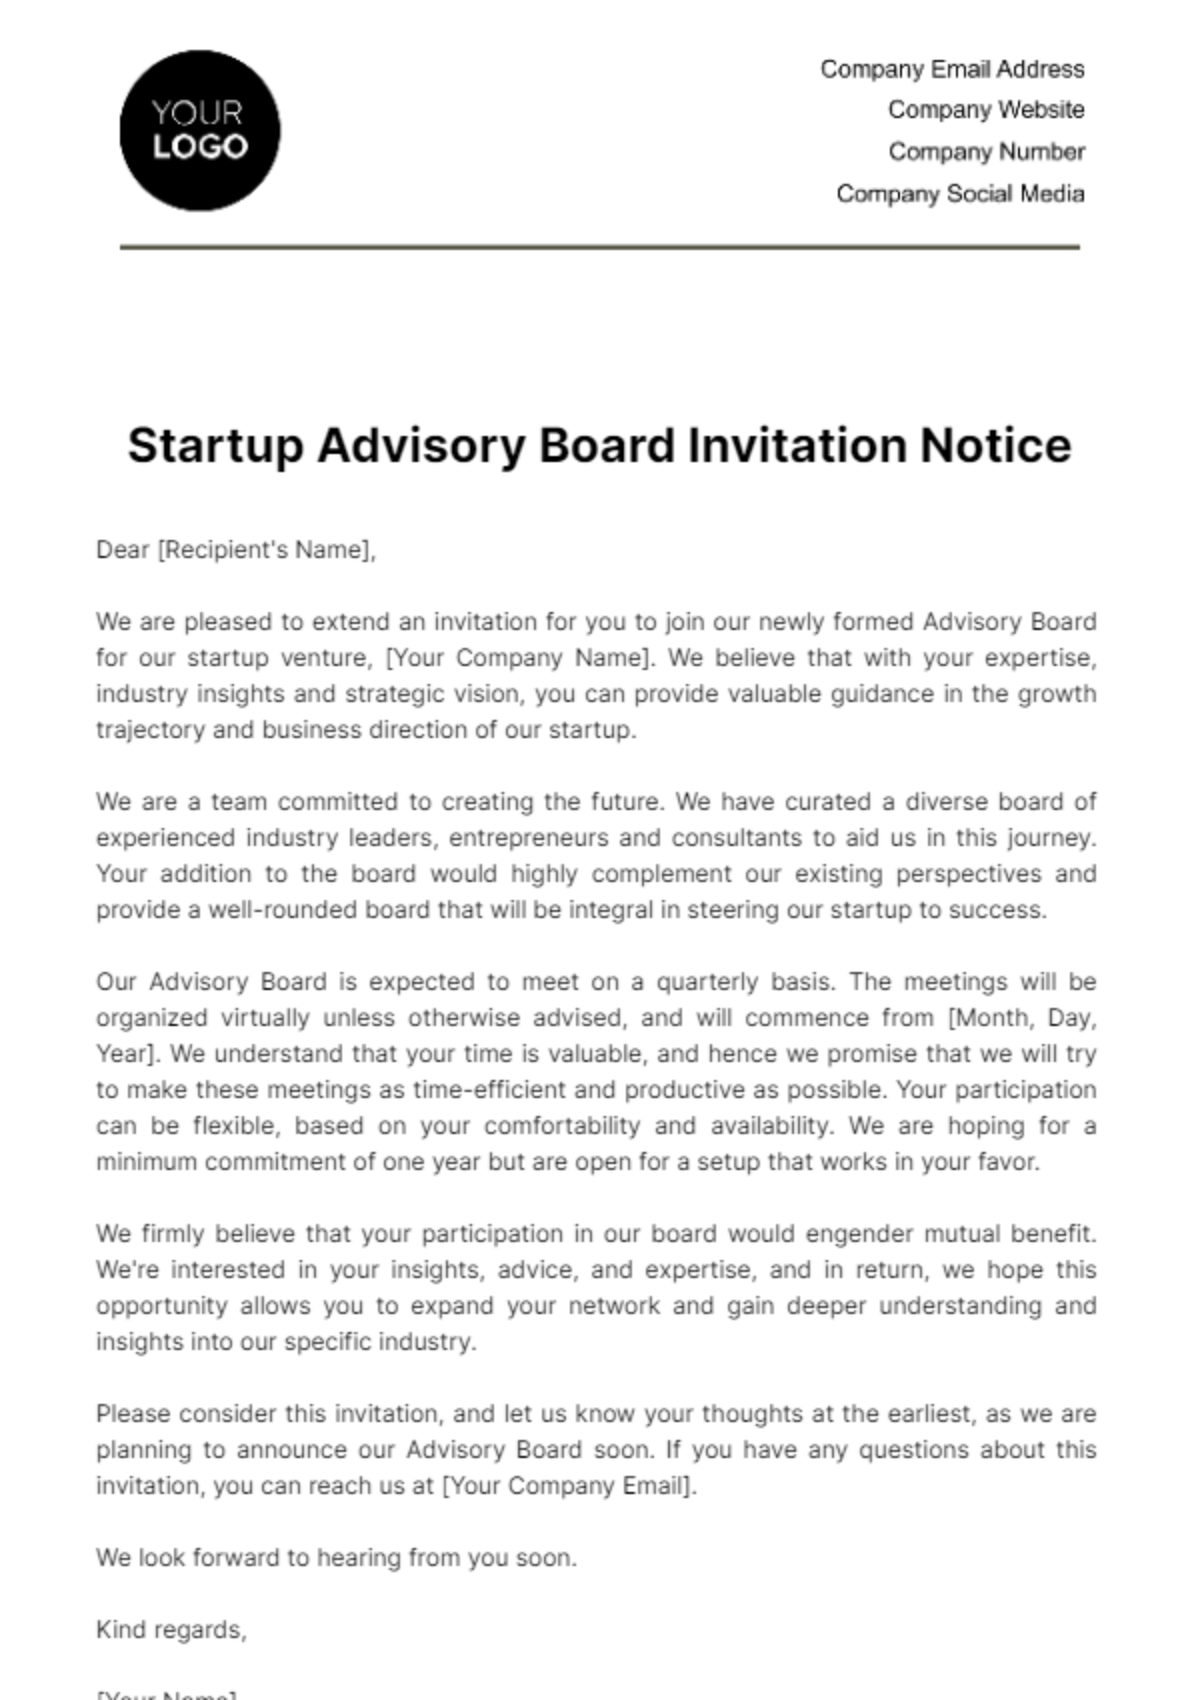 Startup Advisory Board Invitation Notice Template